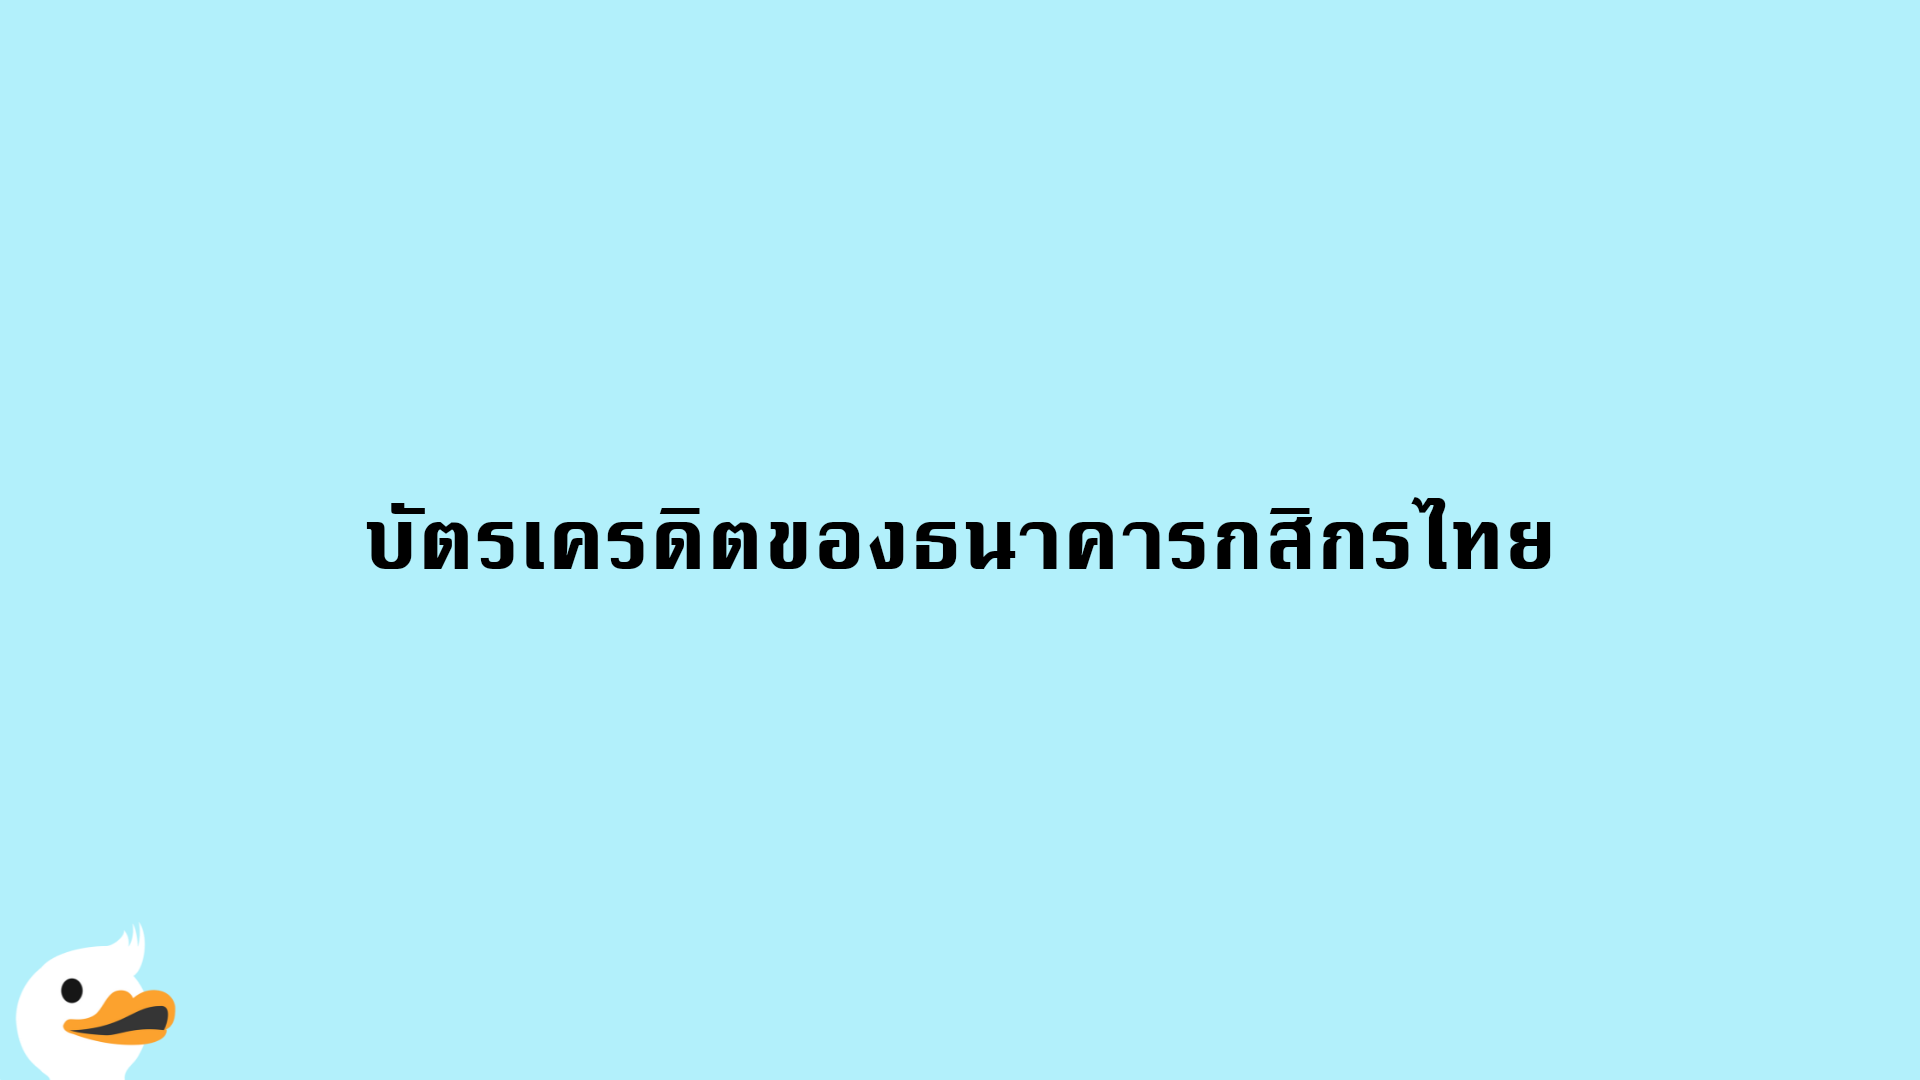 บัตรเครดิตของธนาคารกสิกรไทย